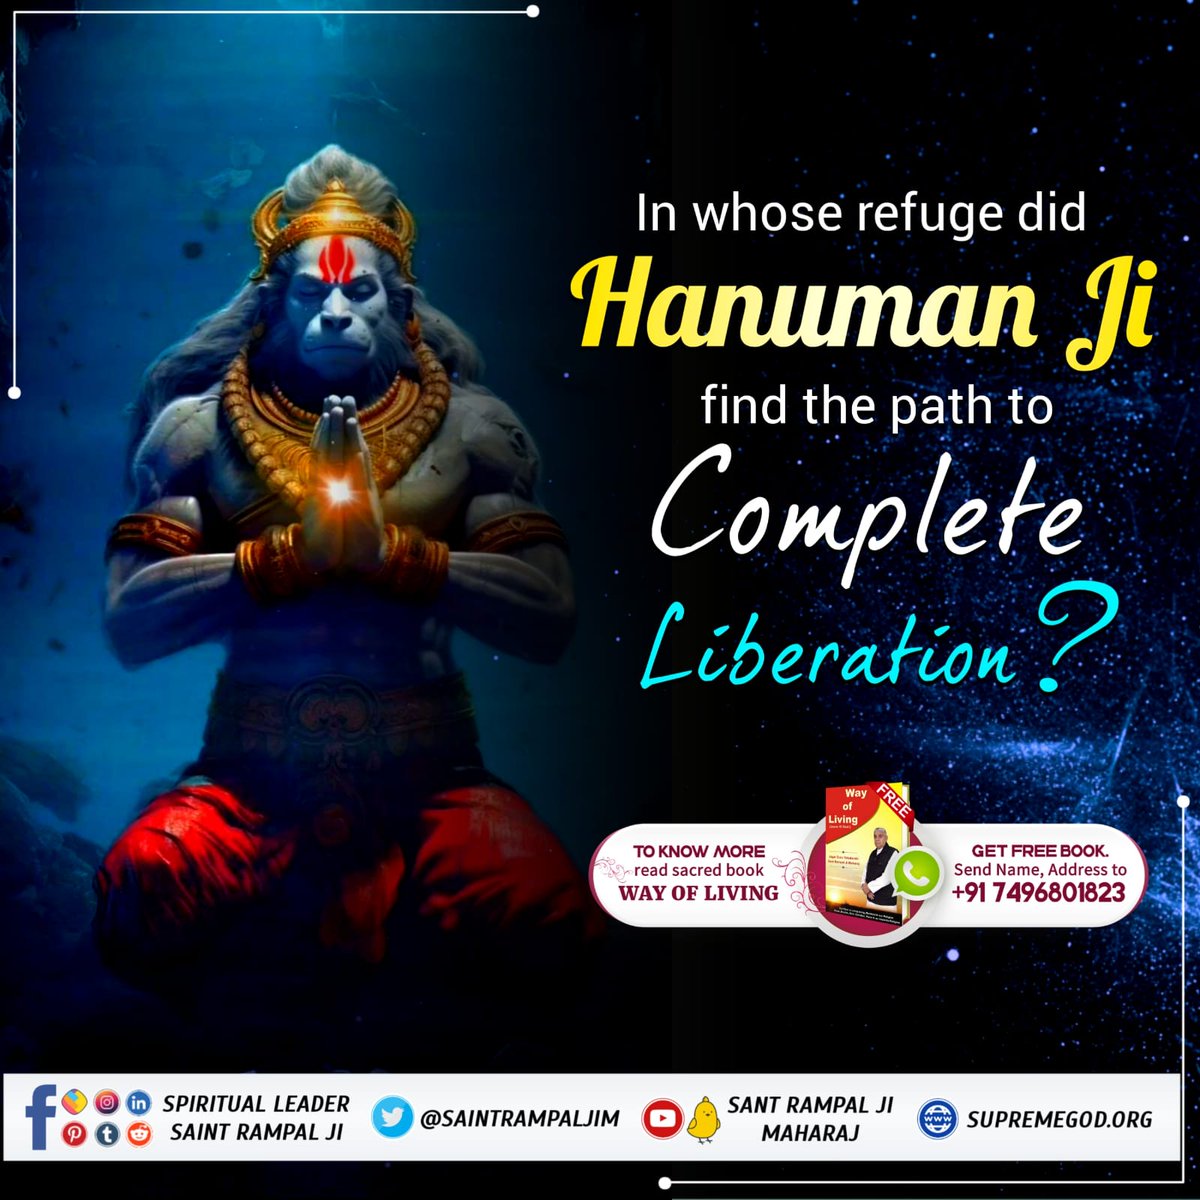 #अयोध्यासे_जानेकेबाद_हनुमानको मिले पूर्ण परमात्मा The Real God came from Satlok and met the Benevolent soul Hanuman Ji. Who was that Real God? #SaintRampalJiQuotes